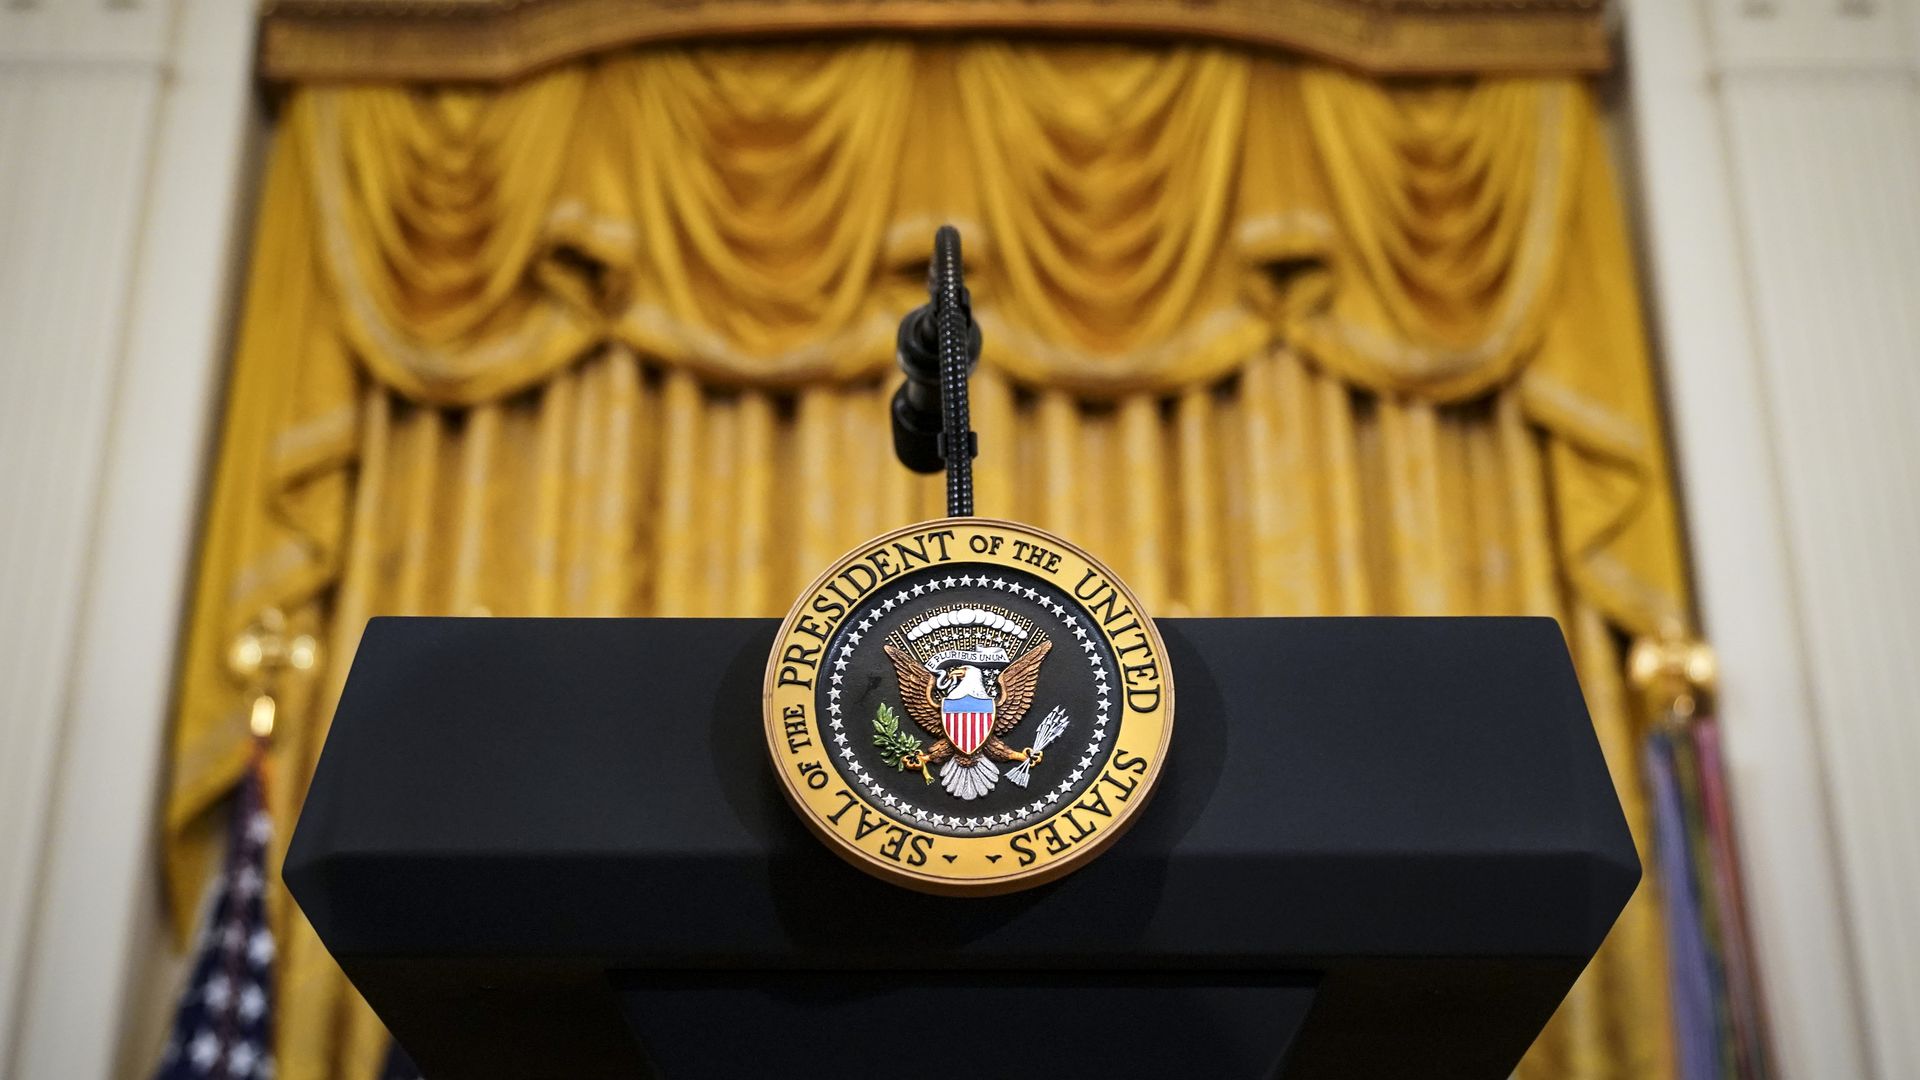 The president's podium